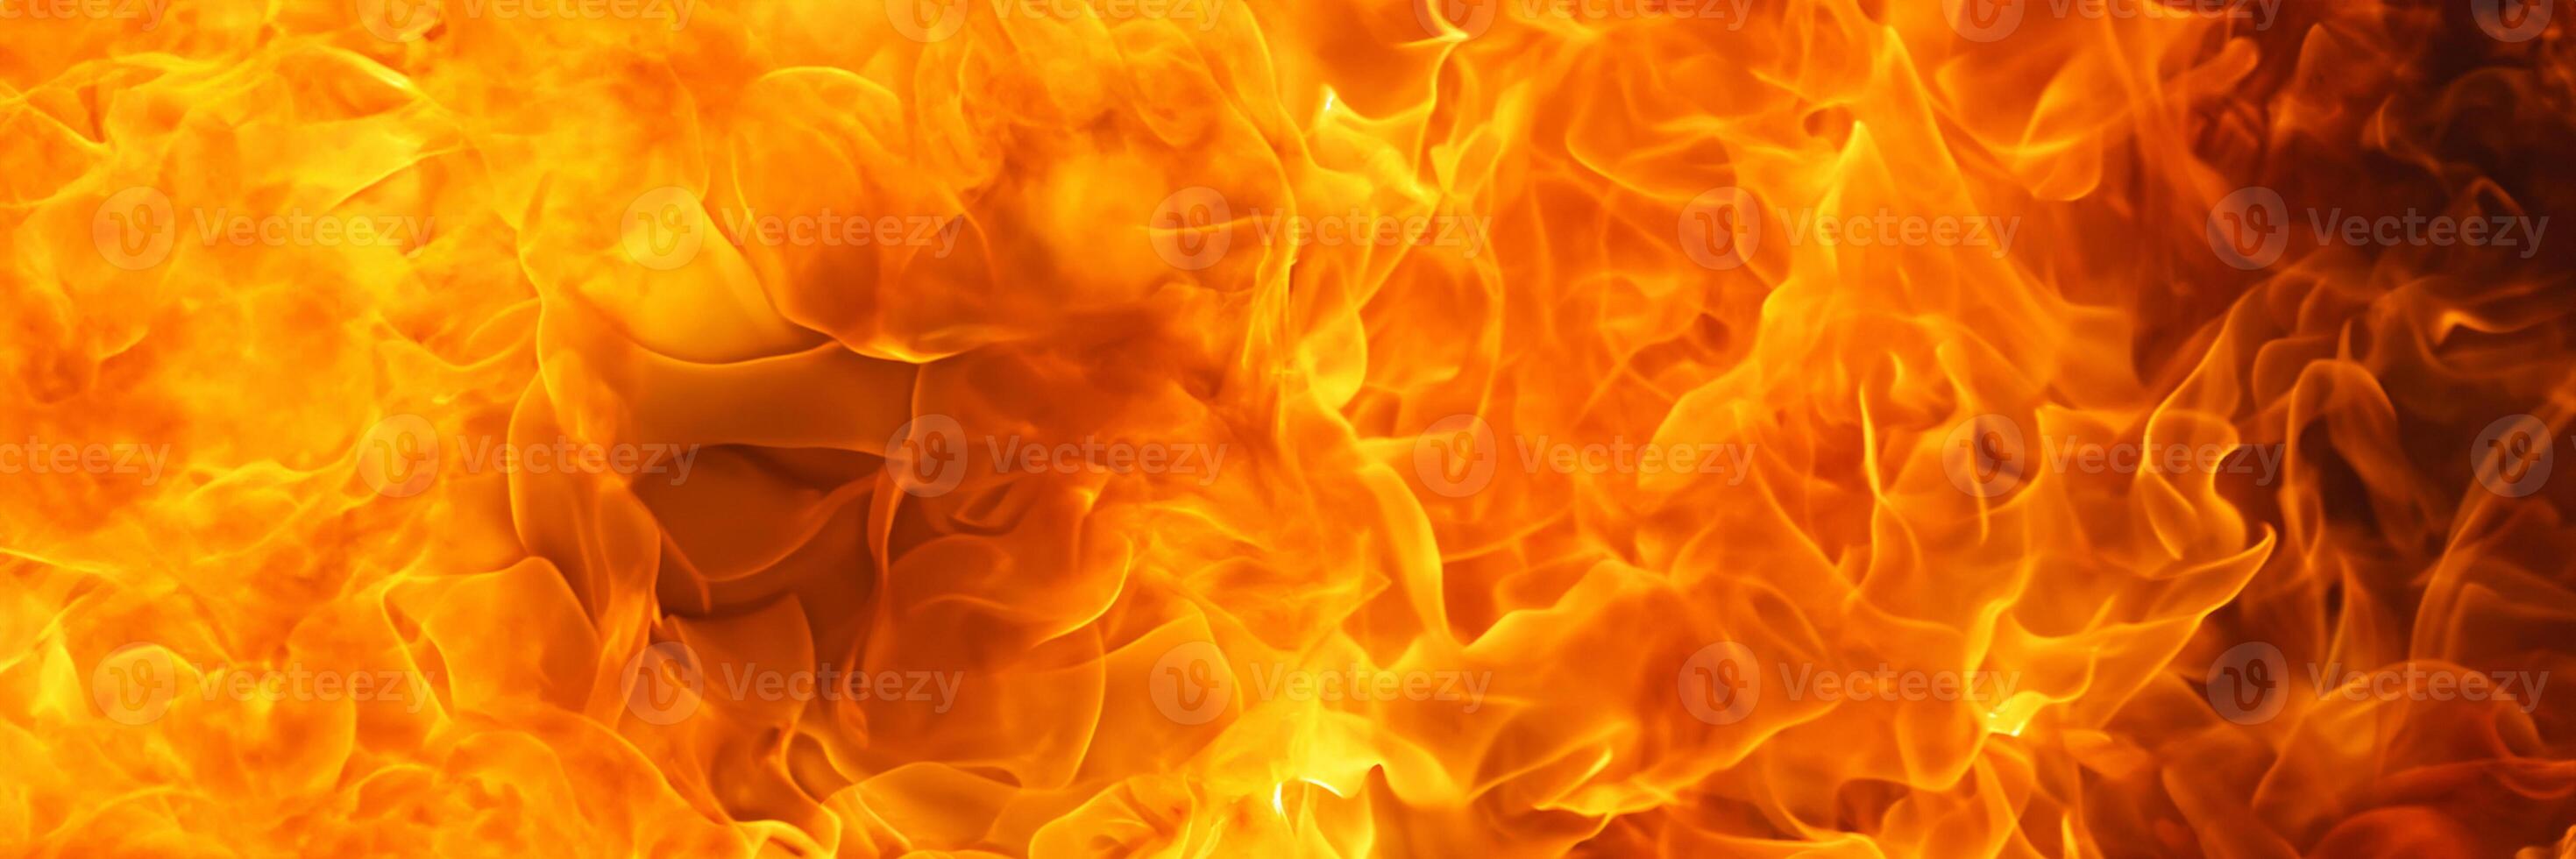 flamber Feu flamme incendie texture pour bannière arrière-plan, 3 X 1 rapport photo